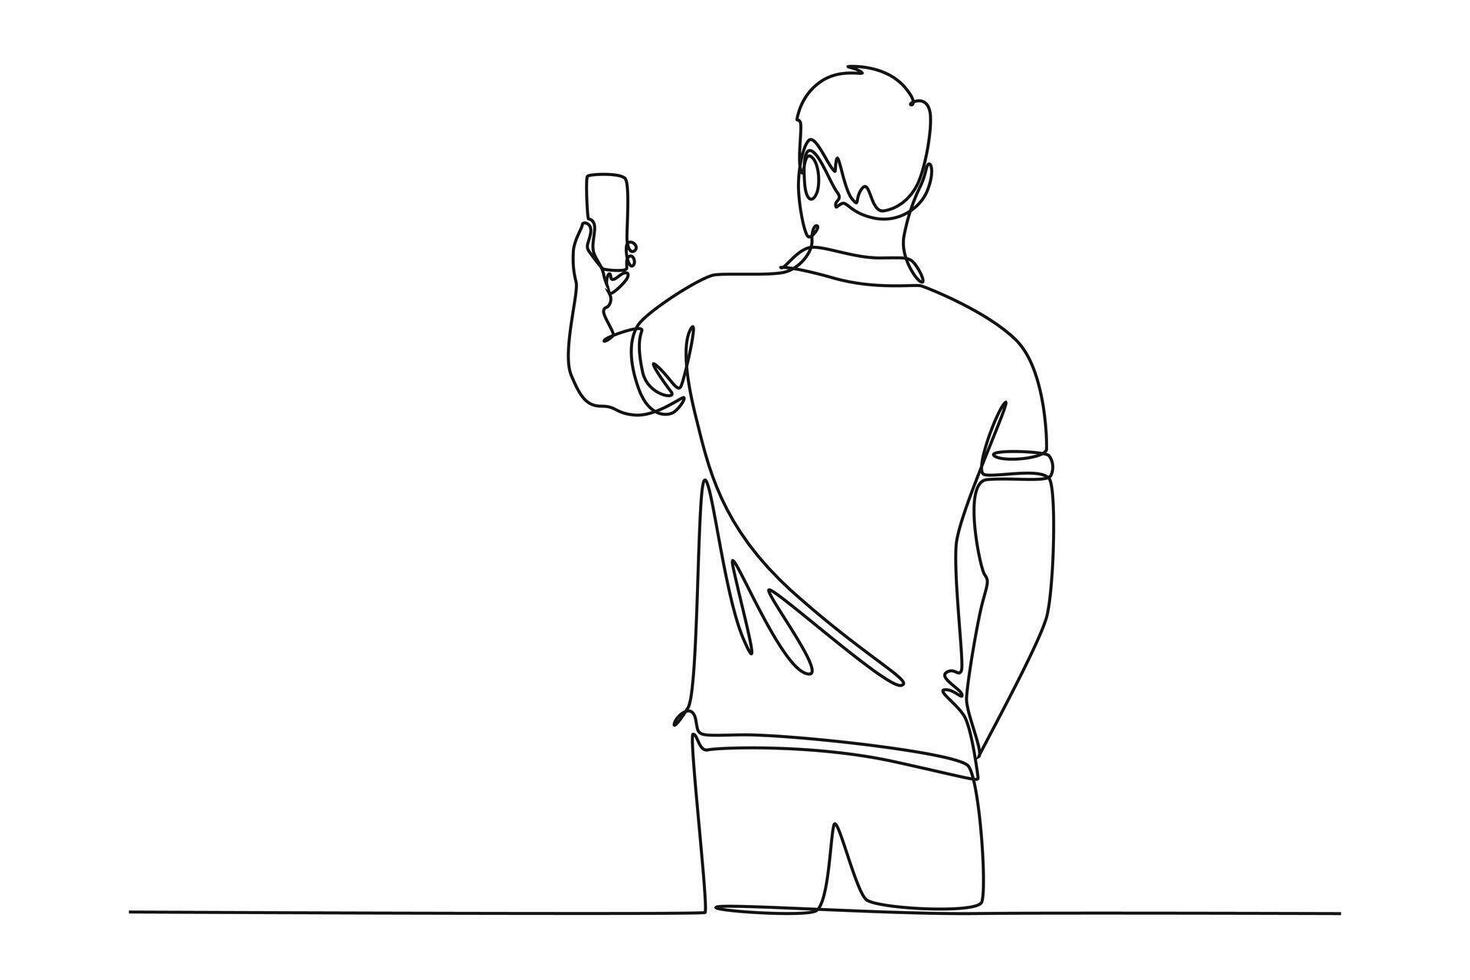 doorlopend een lijn tekening mensen vasthouden, gebruik makend van mobiel telefoons concept vector